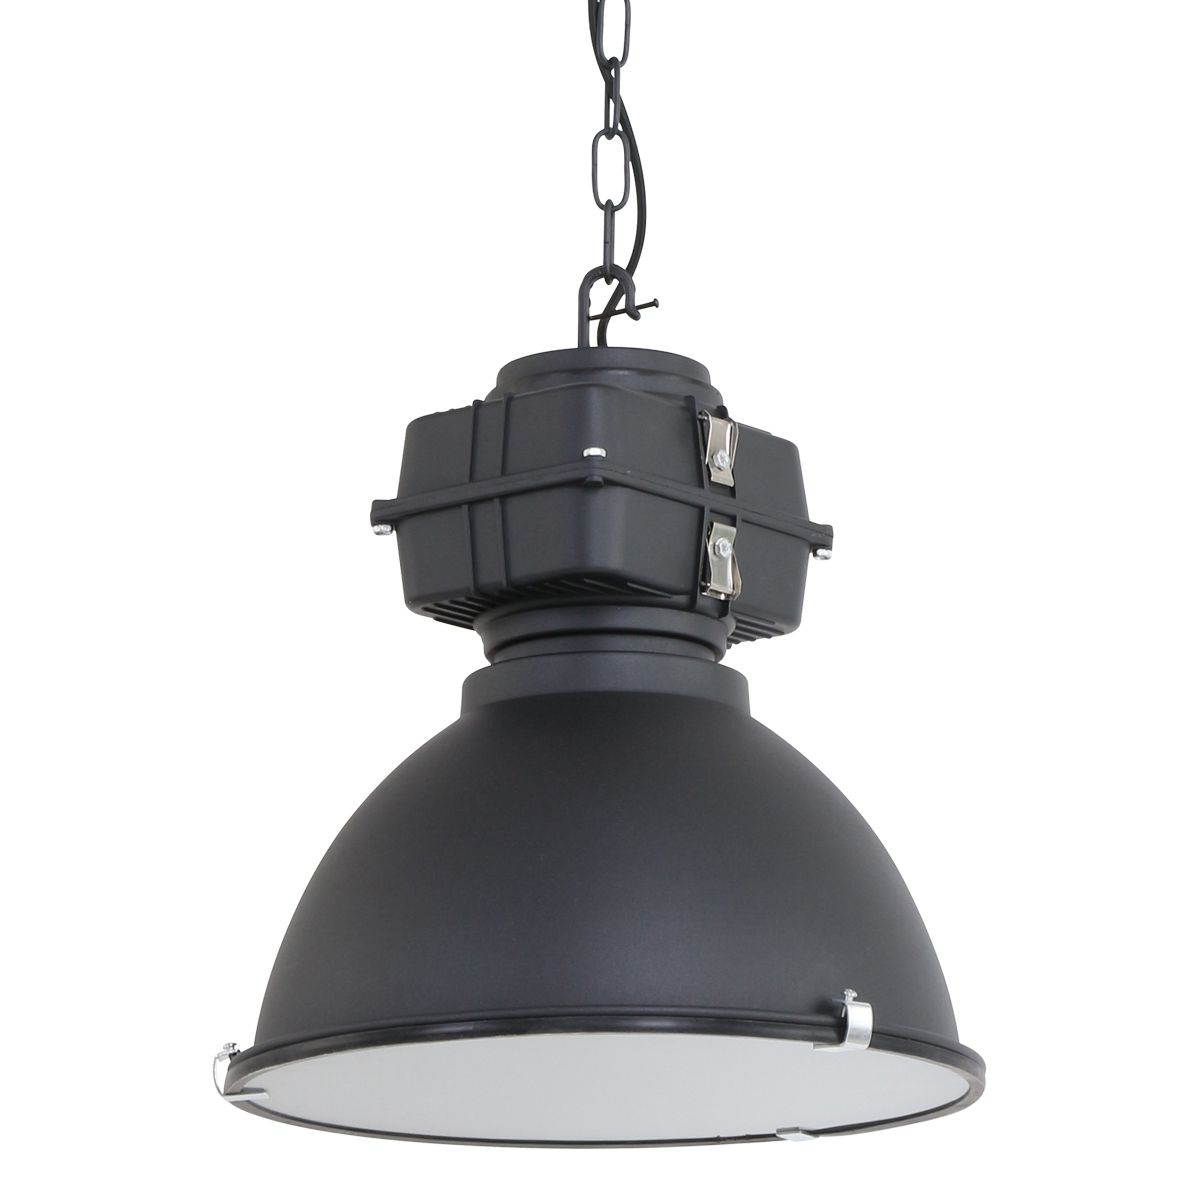 Billede af Bale - industri loftlampe i grå eller sort metal, skærmdiameter 38 cm. Metal - sort